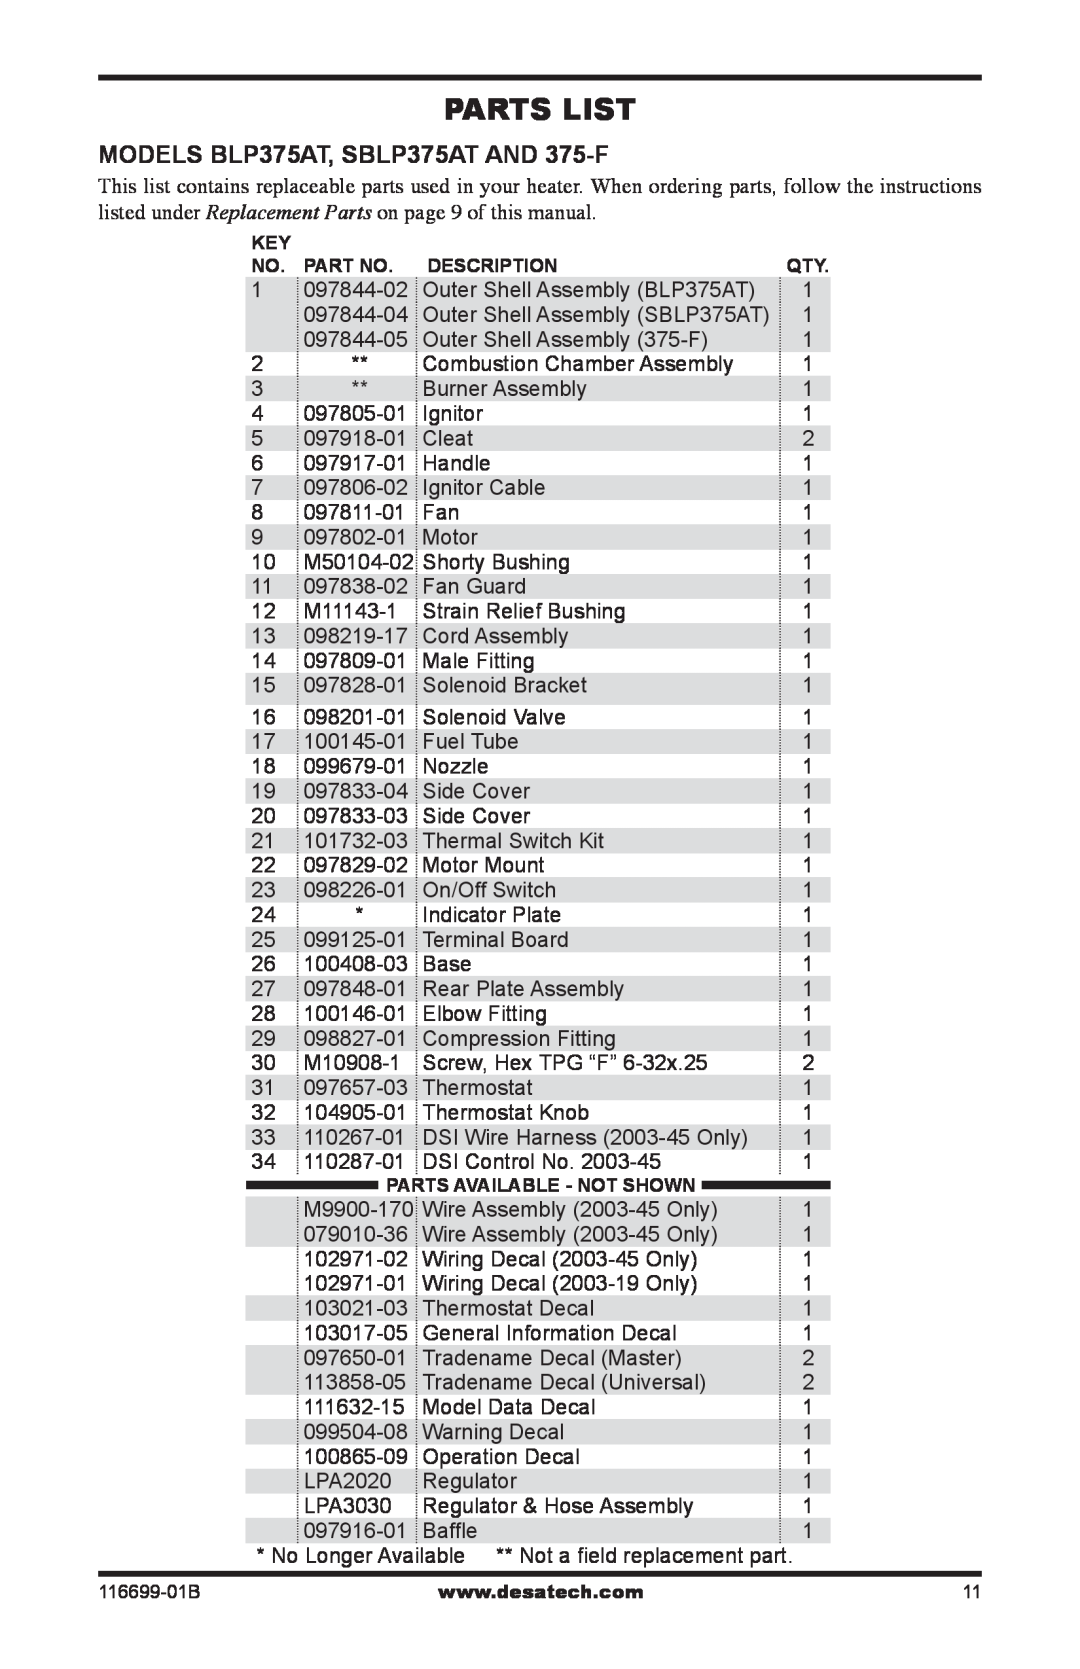 Desa owner manual Parts List, MODELS BLP375AT, SBLP375AT AND 375-F 